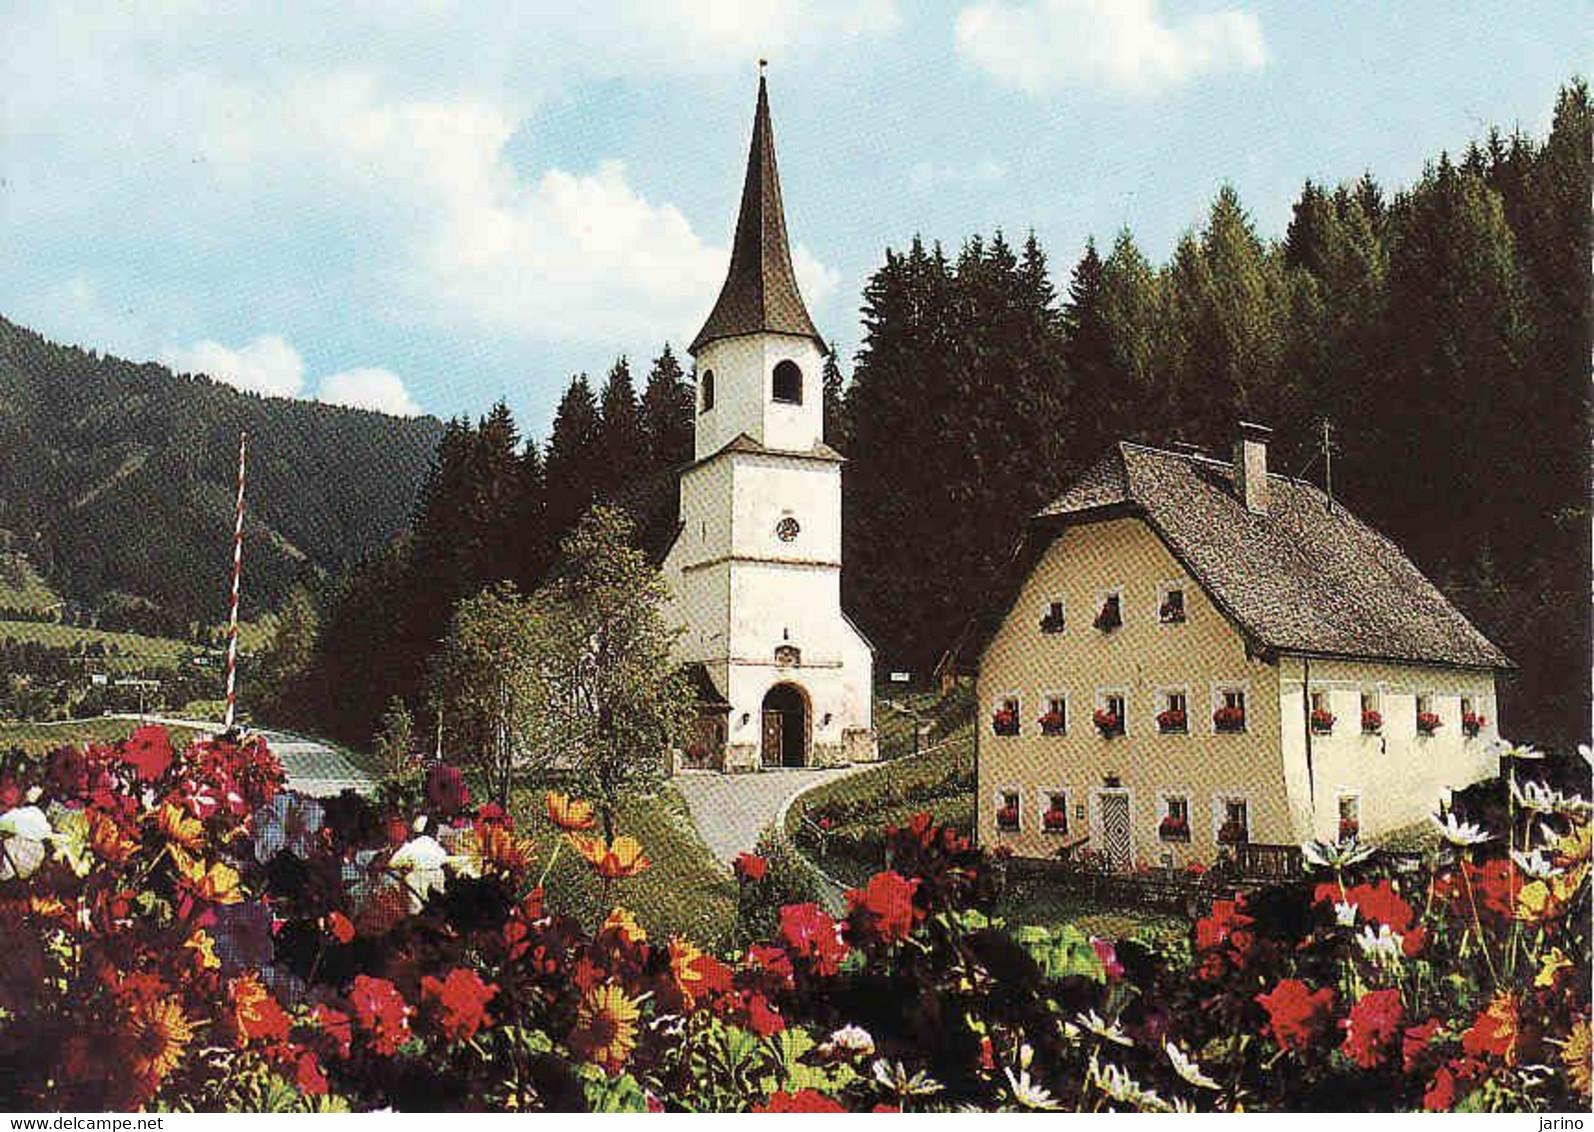 Austria, Salzburg > Werfenweng, Bezirk Sankt Johann Im Pongau, Used 1983 - St. Johann Im Pongau